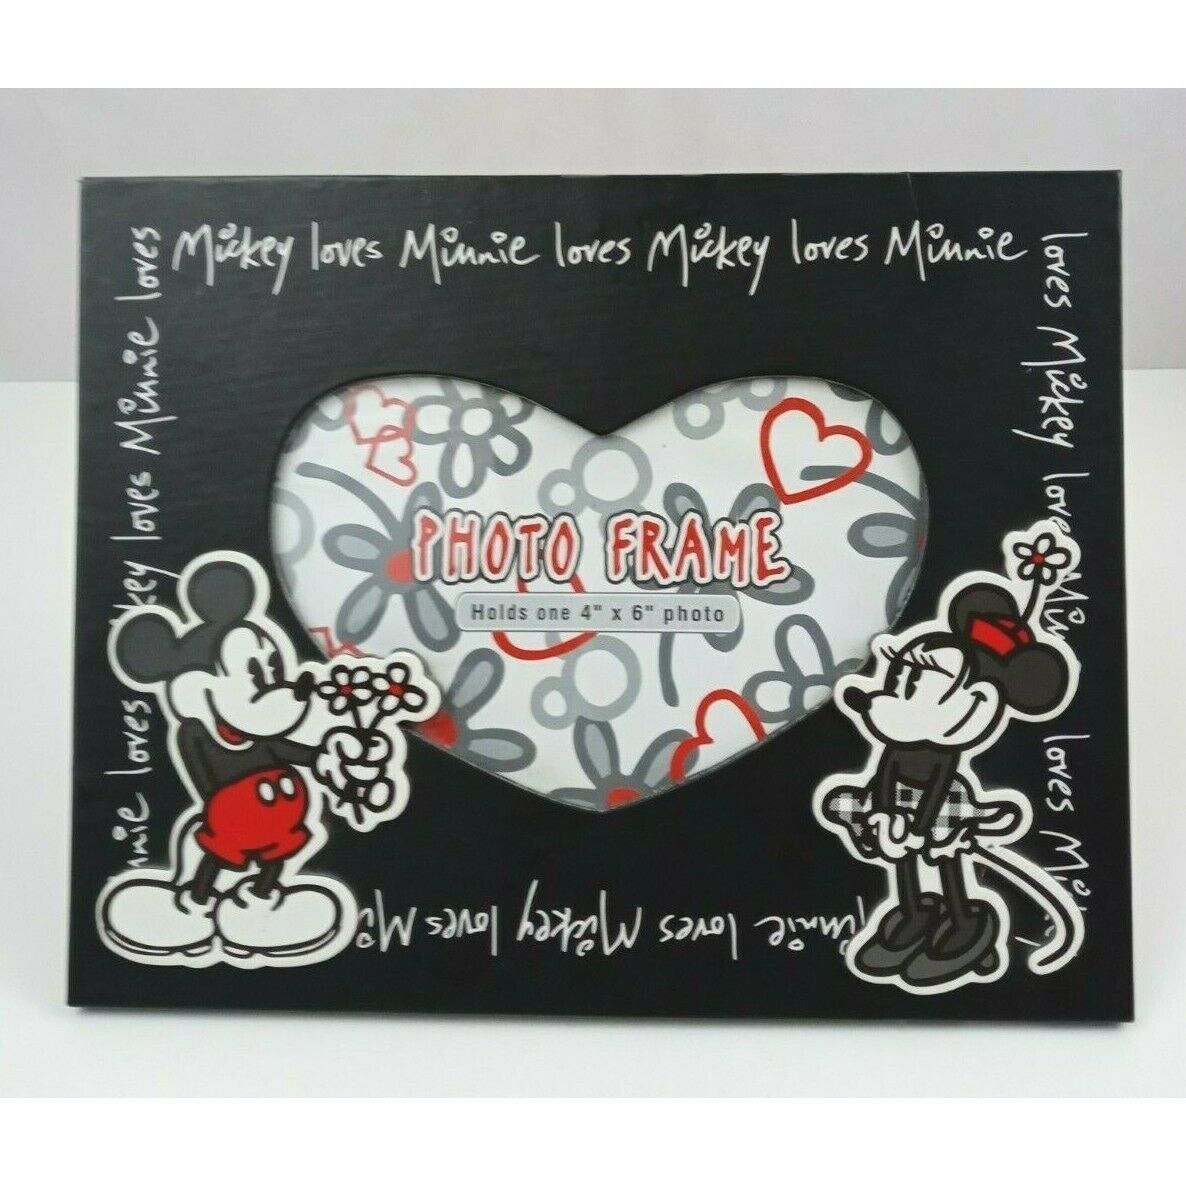 Disney Parks & Resorts Mickey Loves Minnie Loves Mickey 4"x6" Photo Frame - $12.60